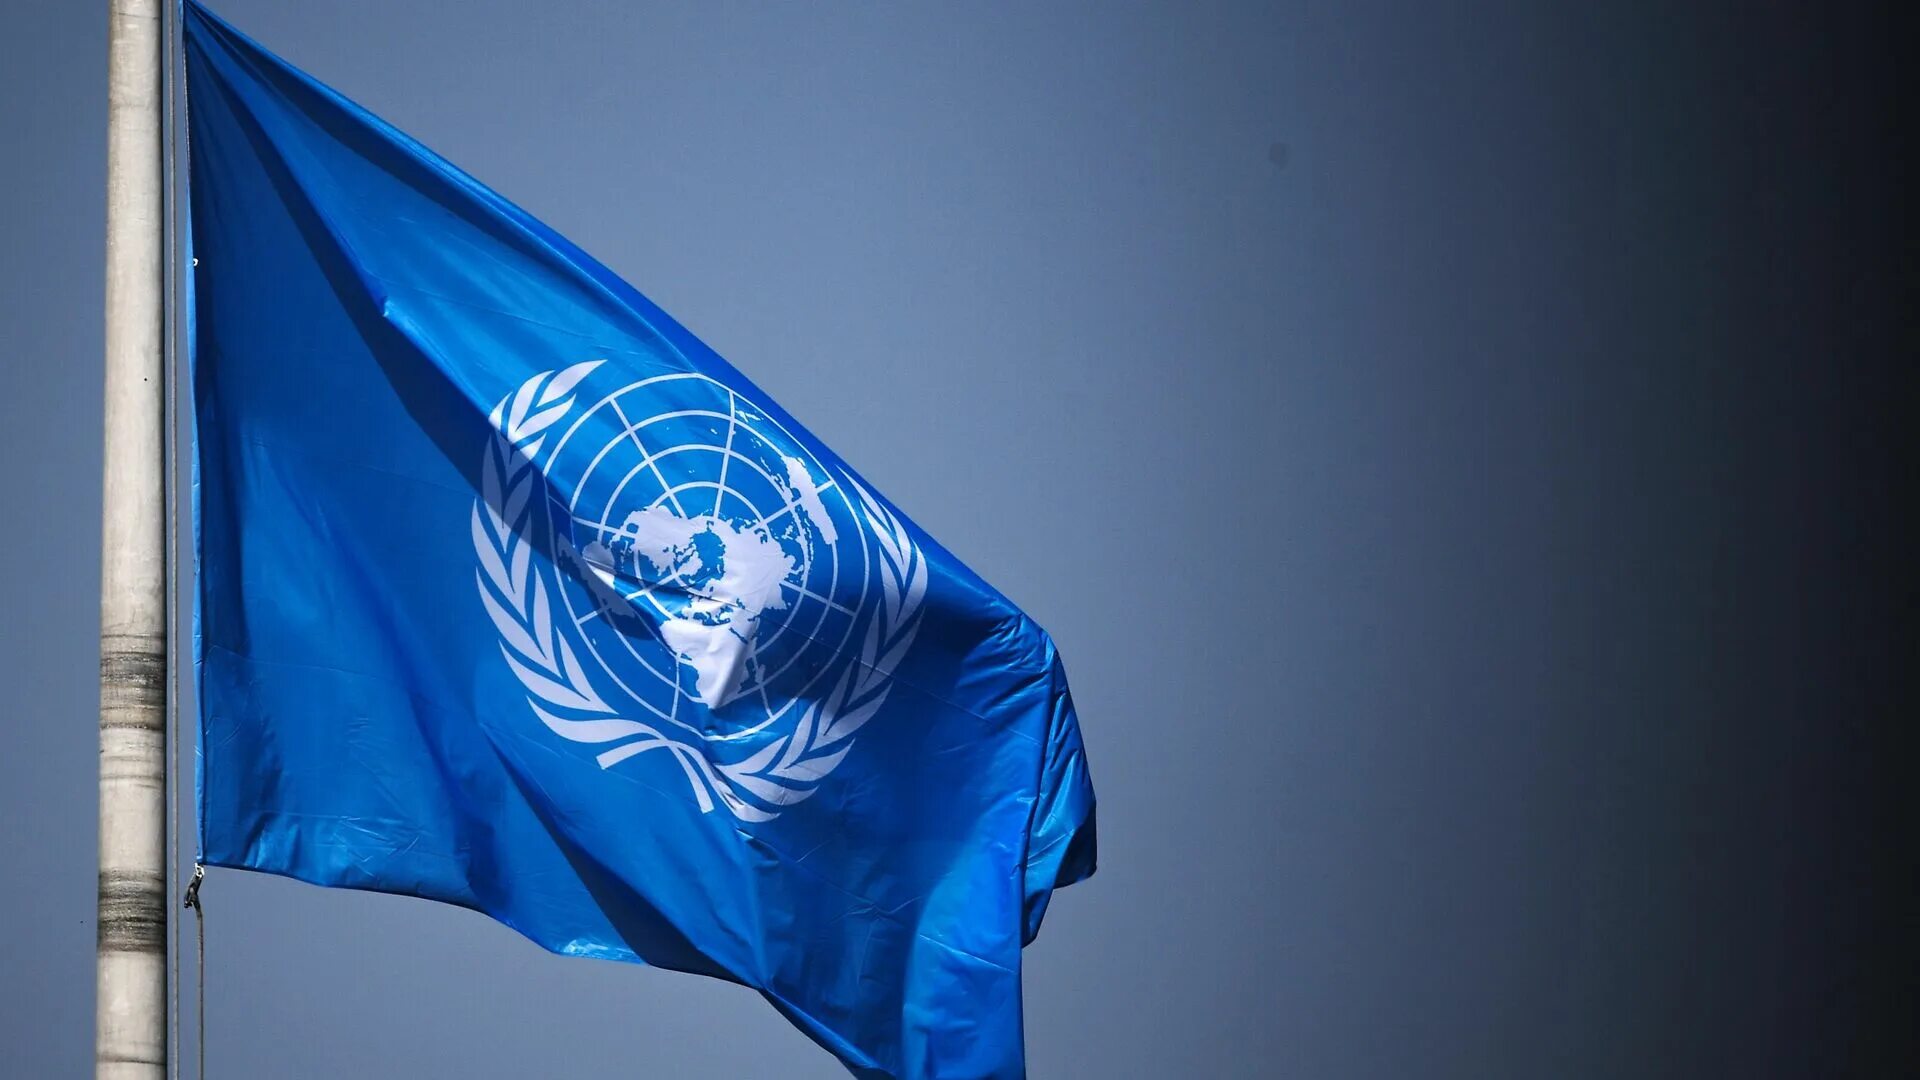 Флаг ООН. Флаг организации Объединенных наций. Организация Объединенных наций (ООН). Генеральная Ассамблея ООН флаг. Украина оон сегодня